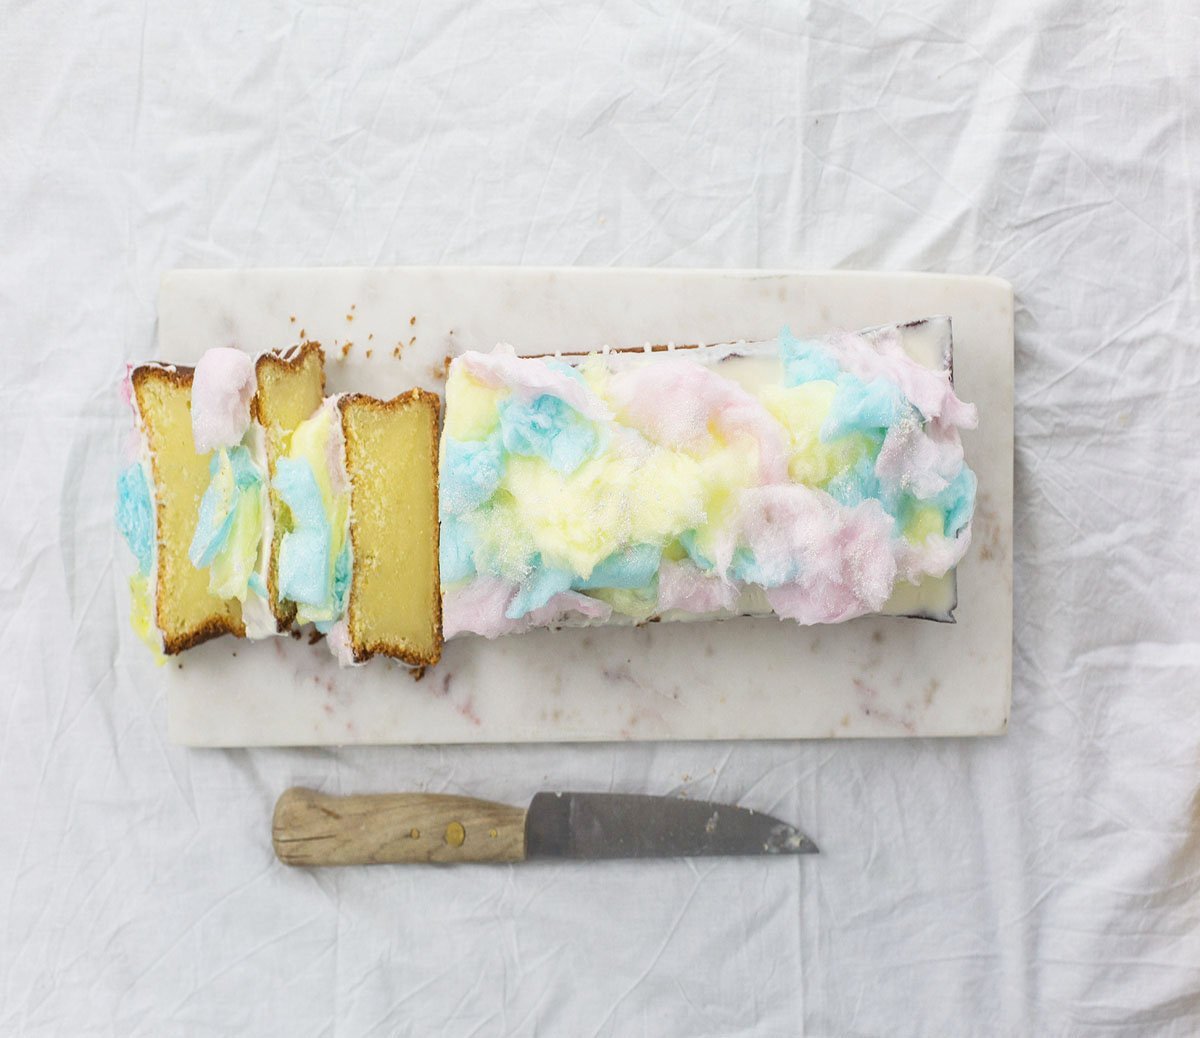 Dieser Galaxy Kuchen ist sensationell einfach gemacht. Er besteht aus Zitronenkuchen. Das Topping machst du aus Zuckerwatte